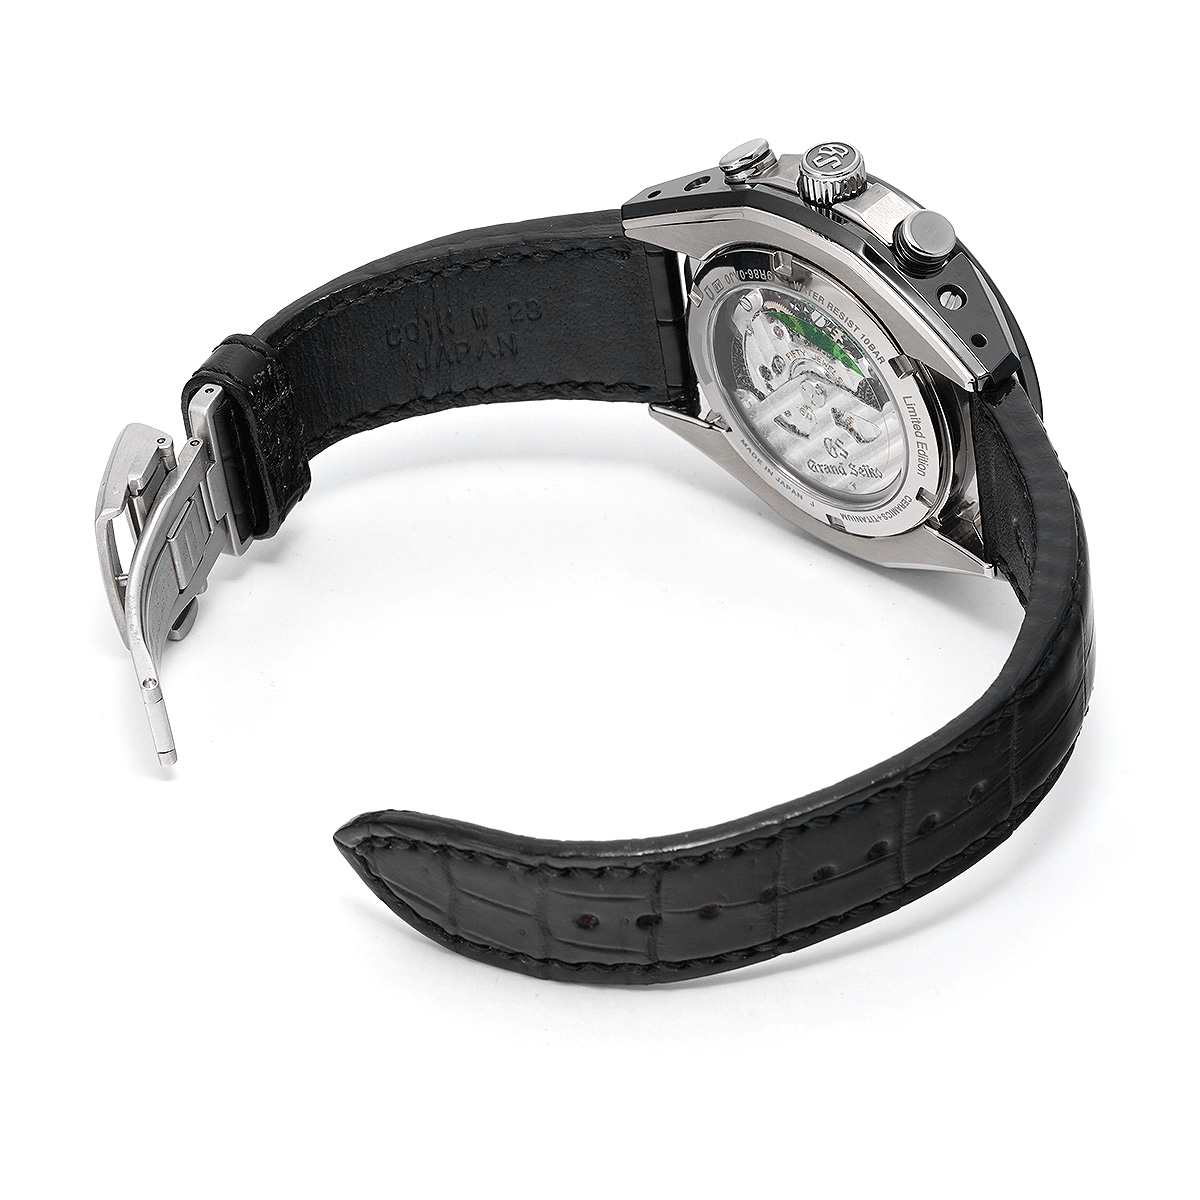 グランドセイコー Grand Seiko SBGC227 ブラック メンズ 腕時計